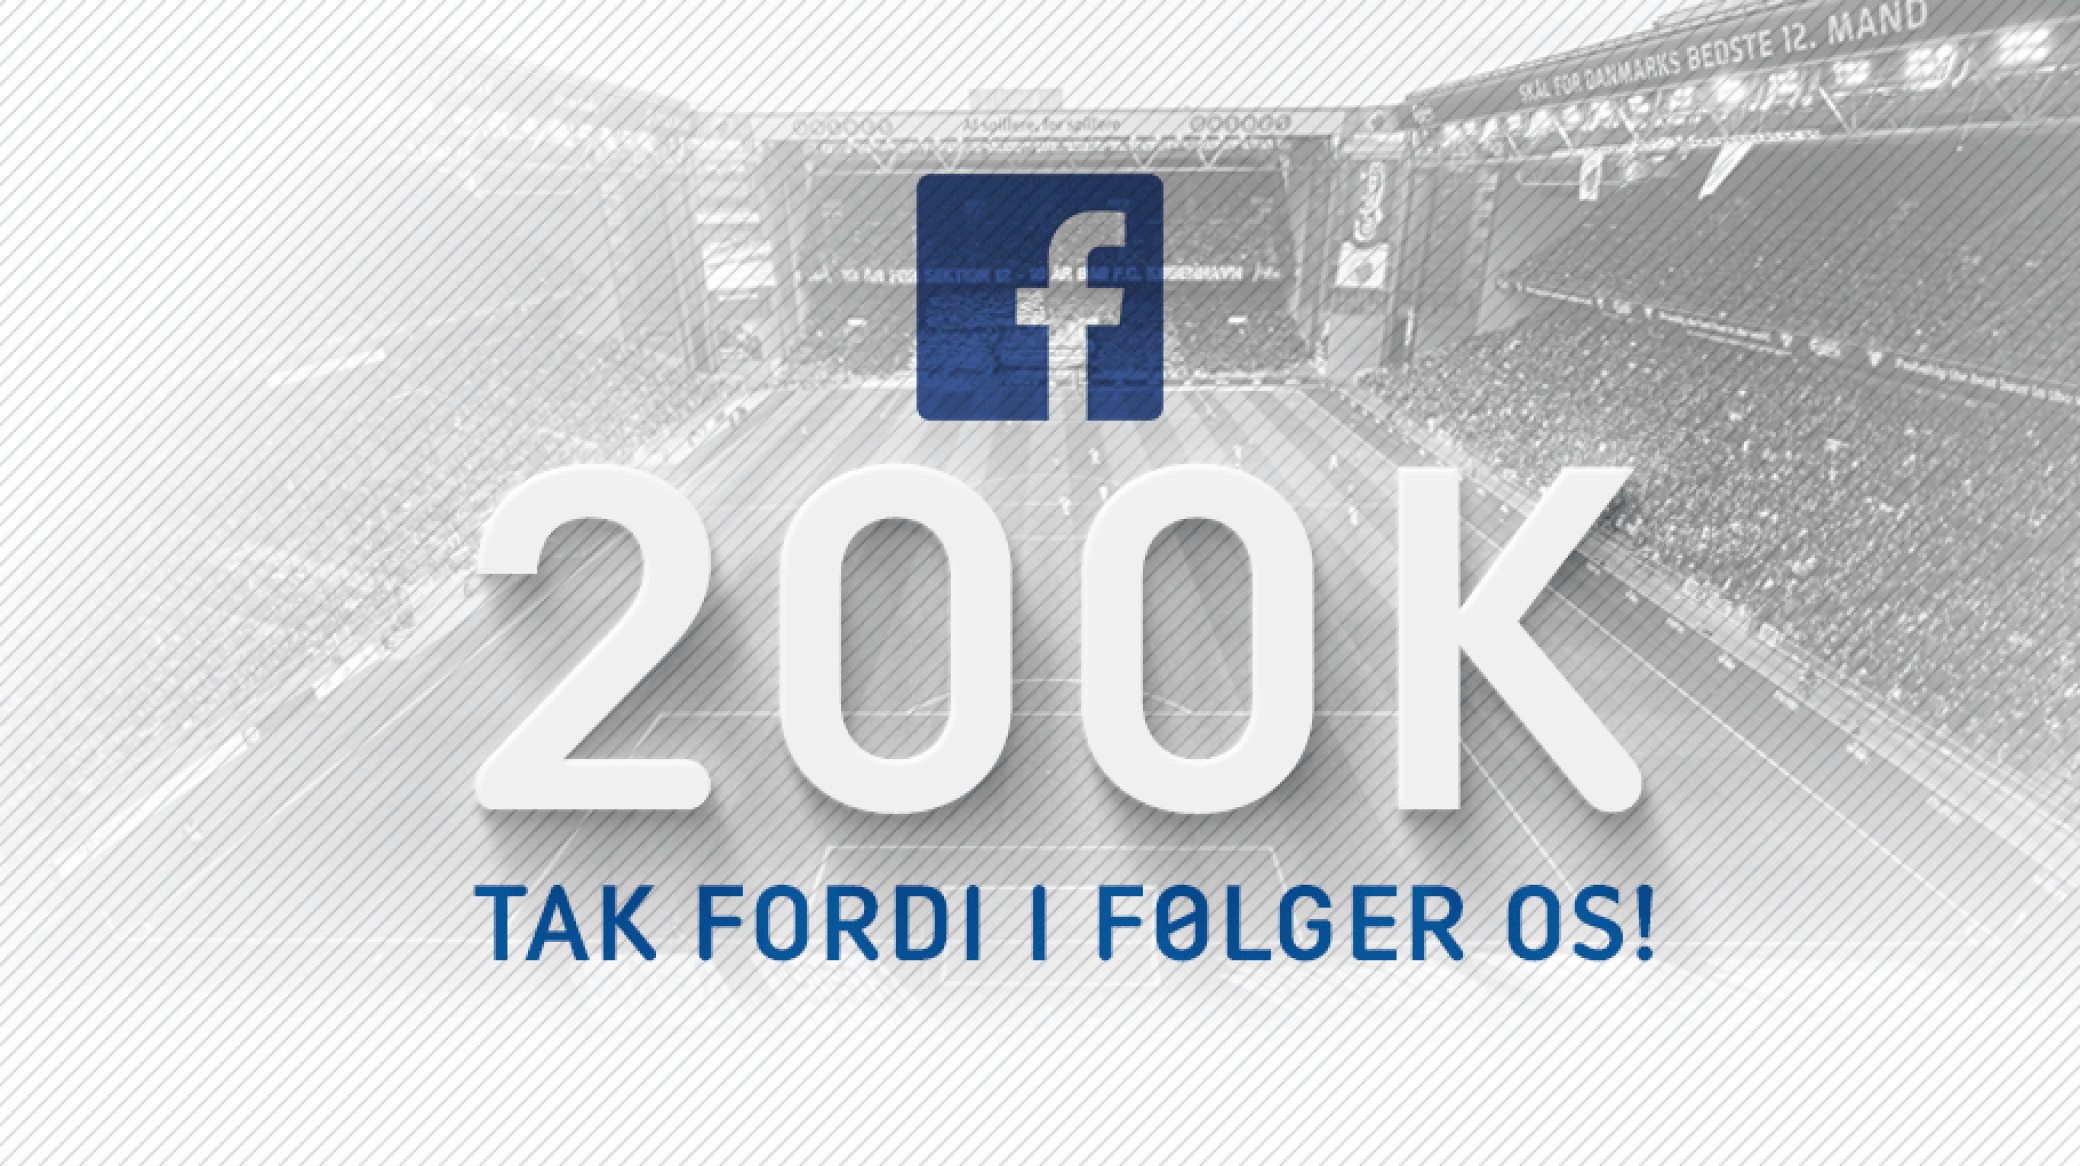 Vores Facebookside har rundet 200K likes